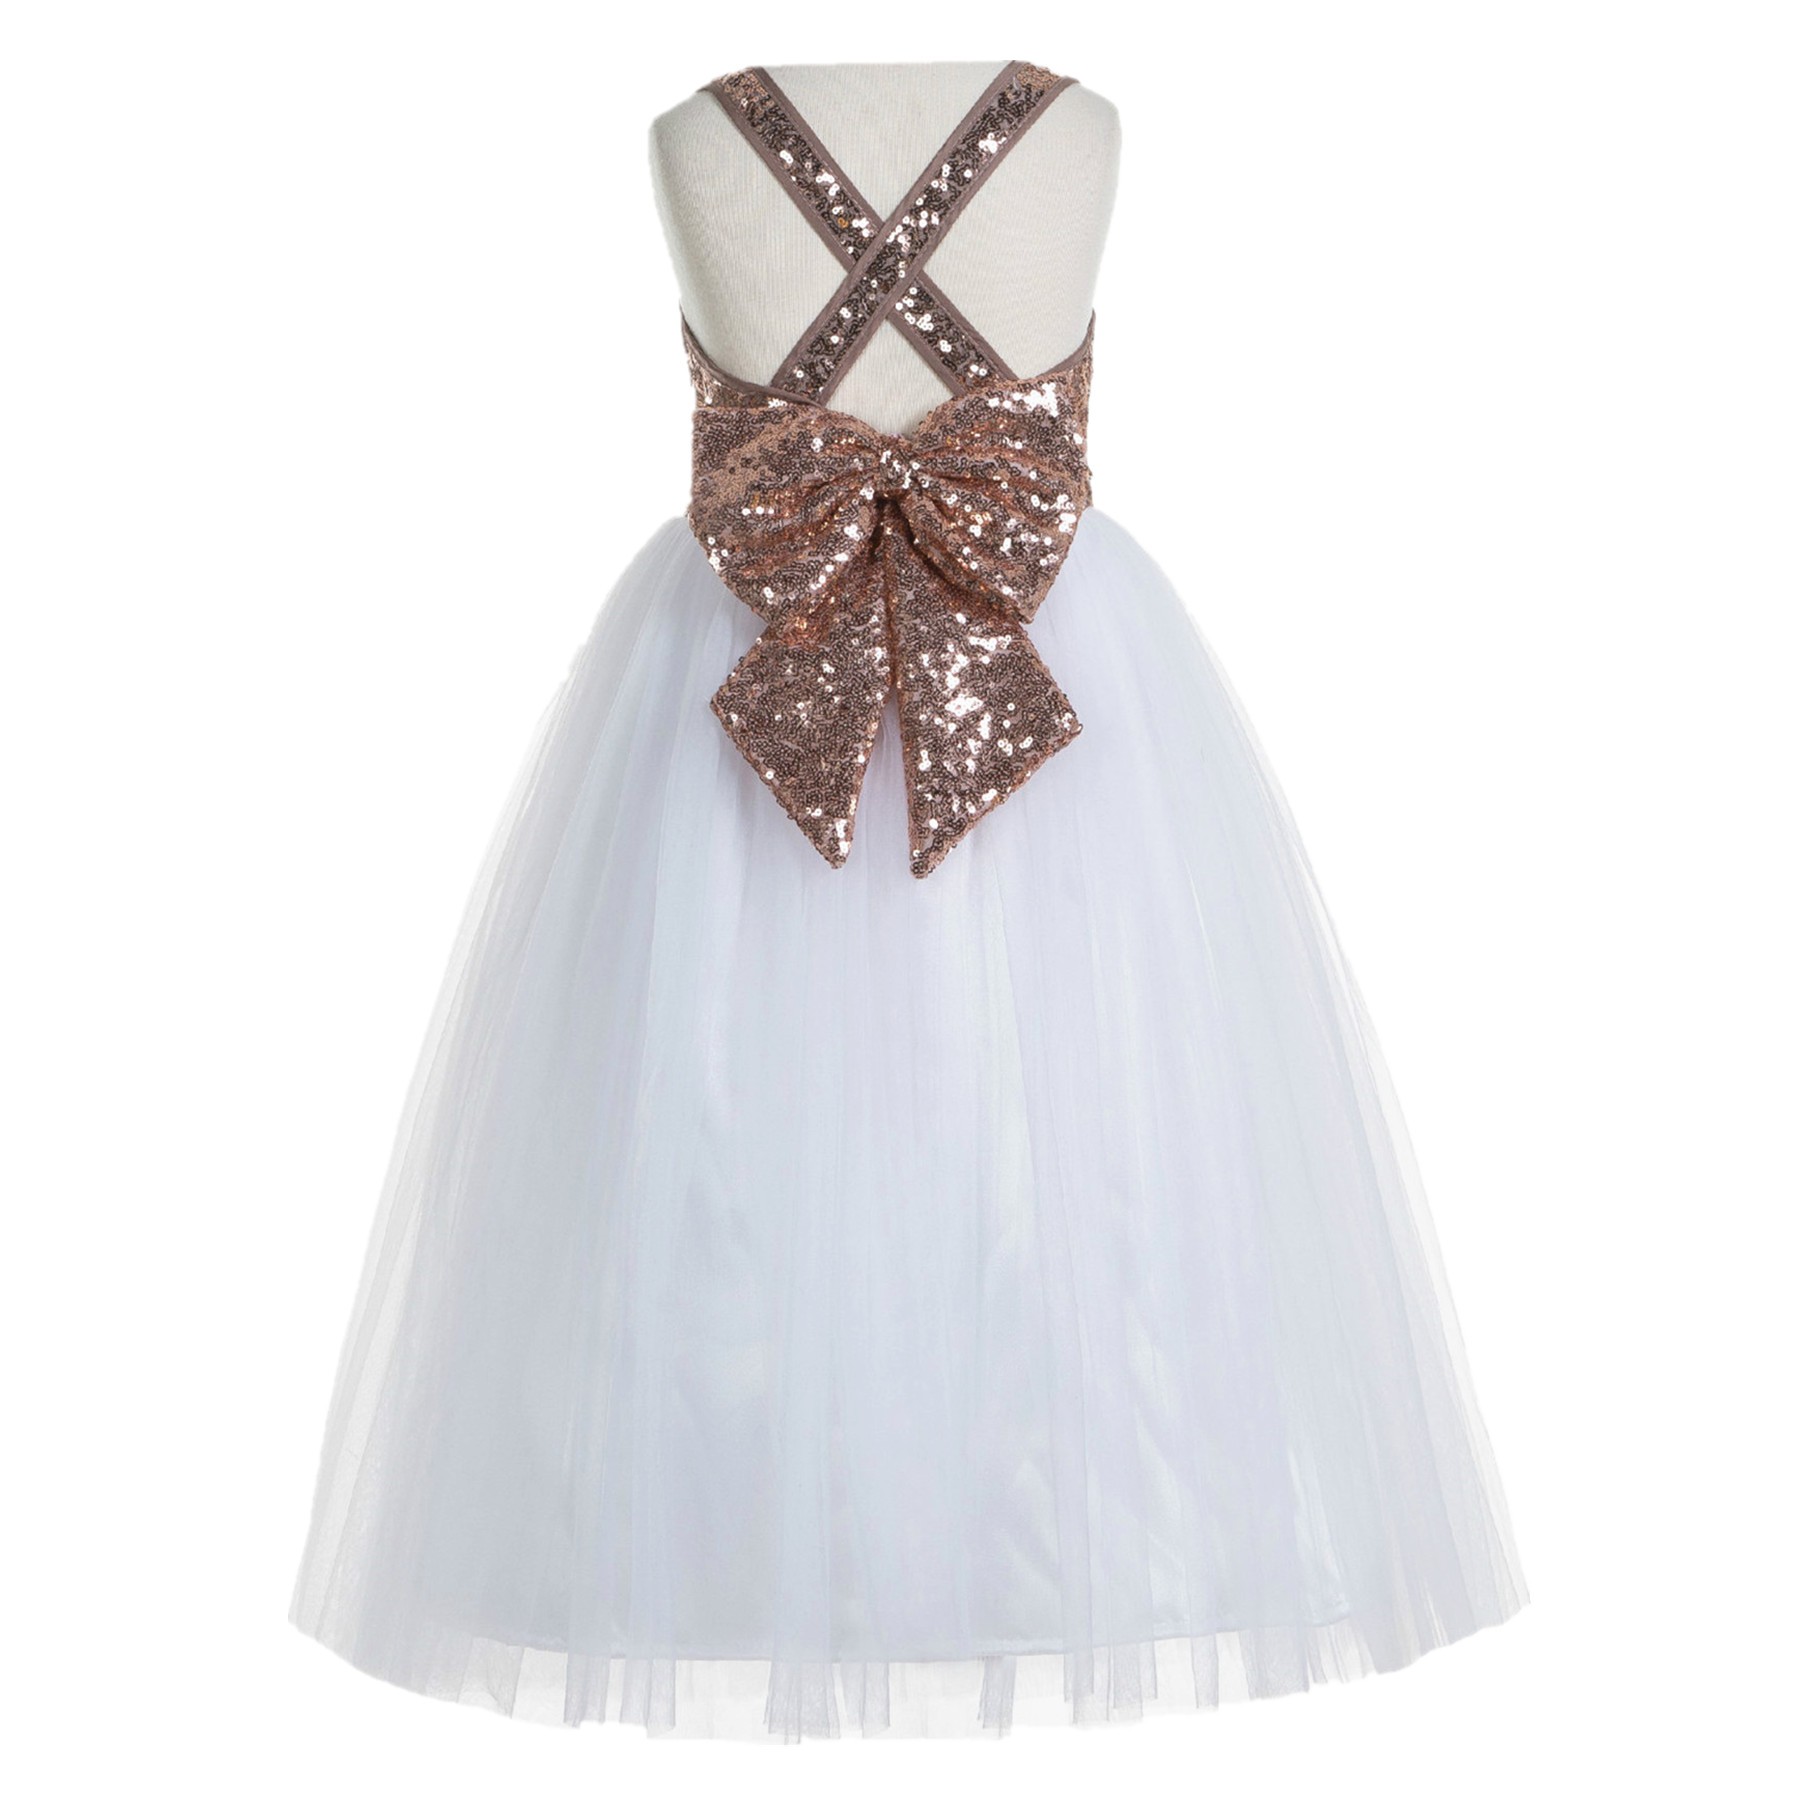 Rose Gold / White Crossed Straps A-Line Flower Girl Dress 177